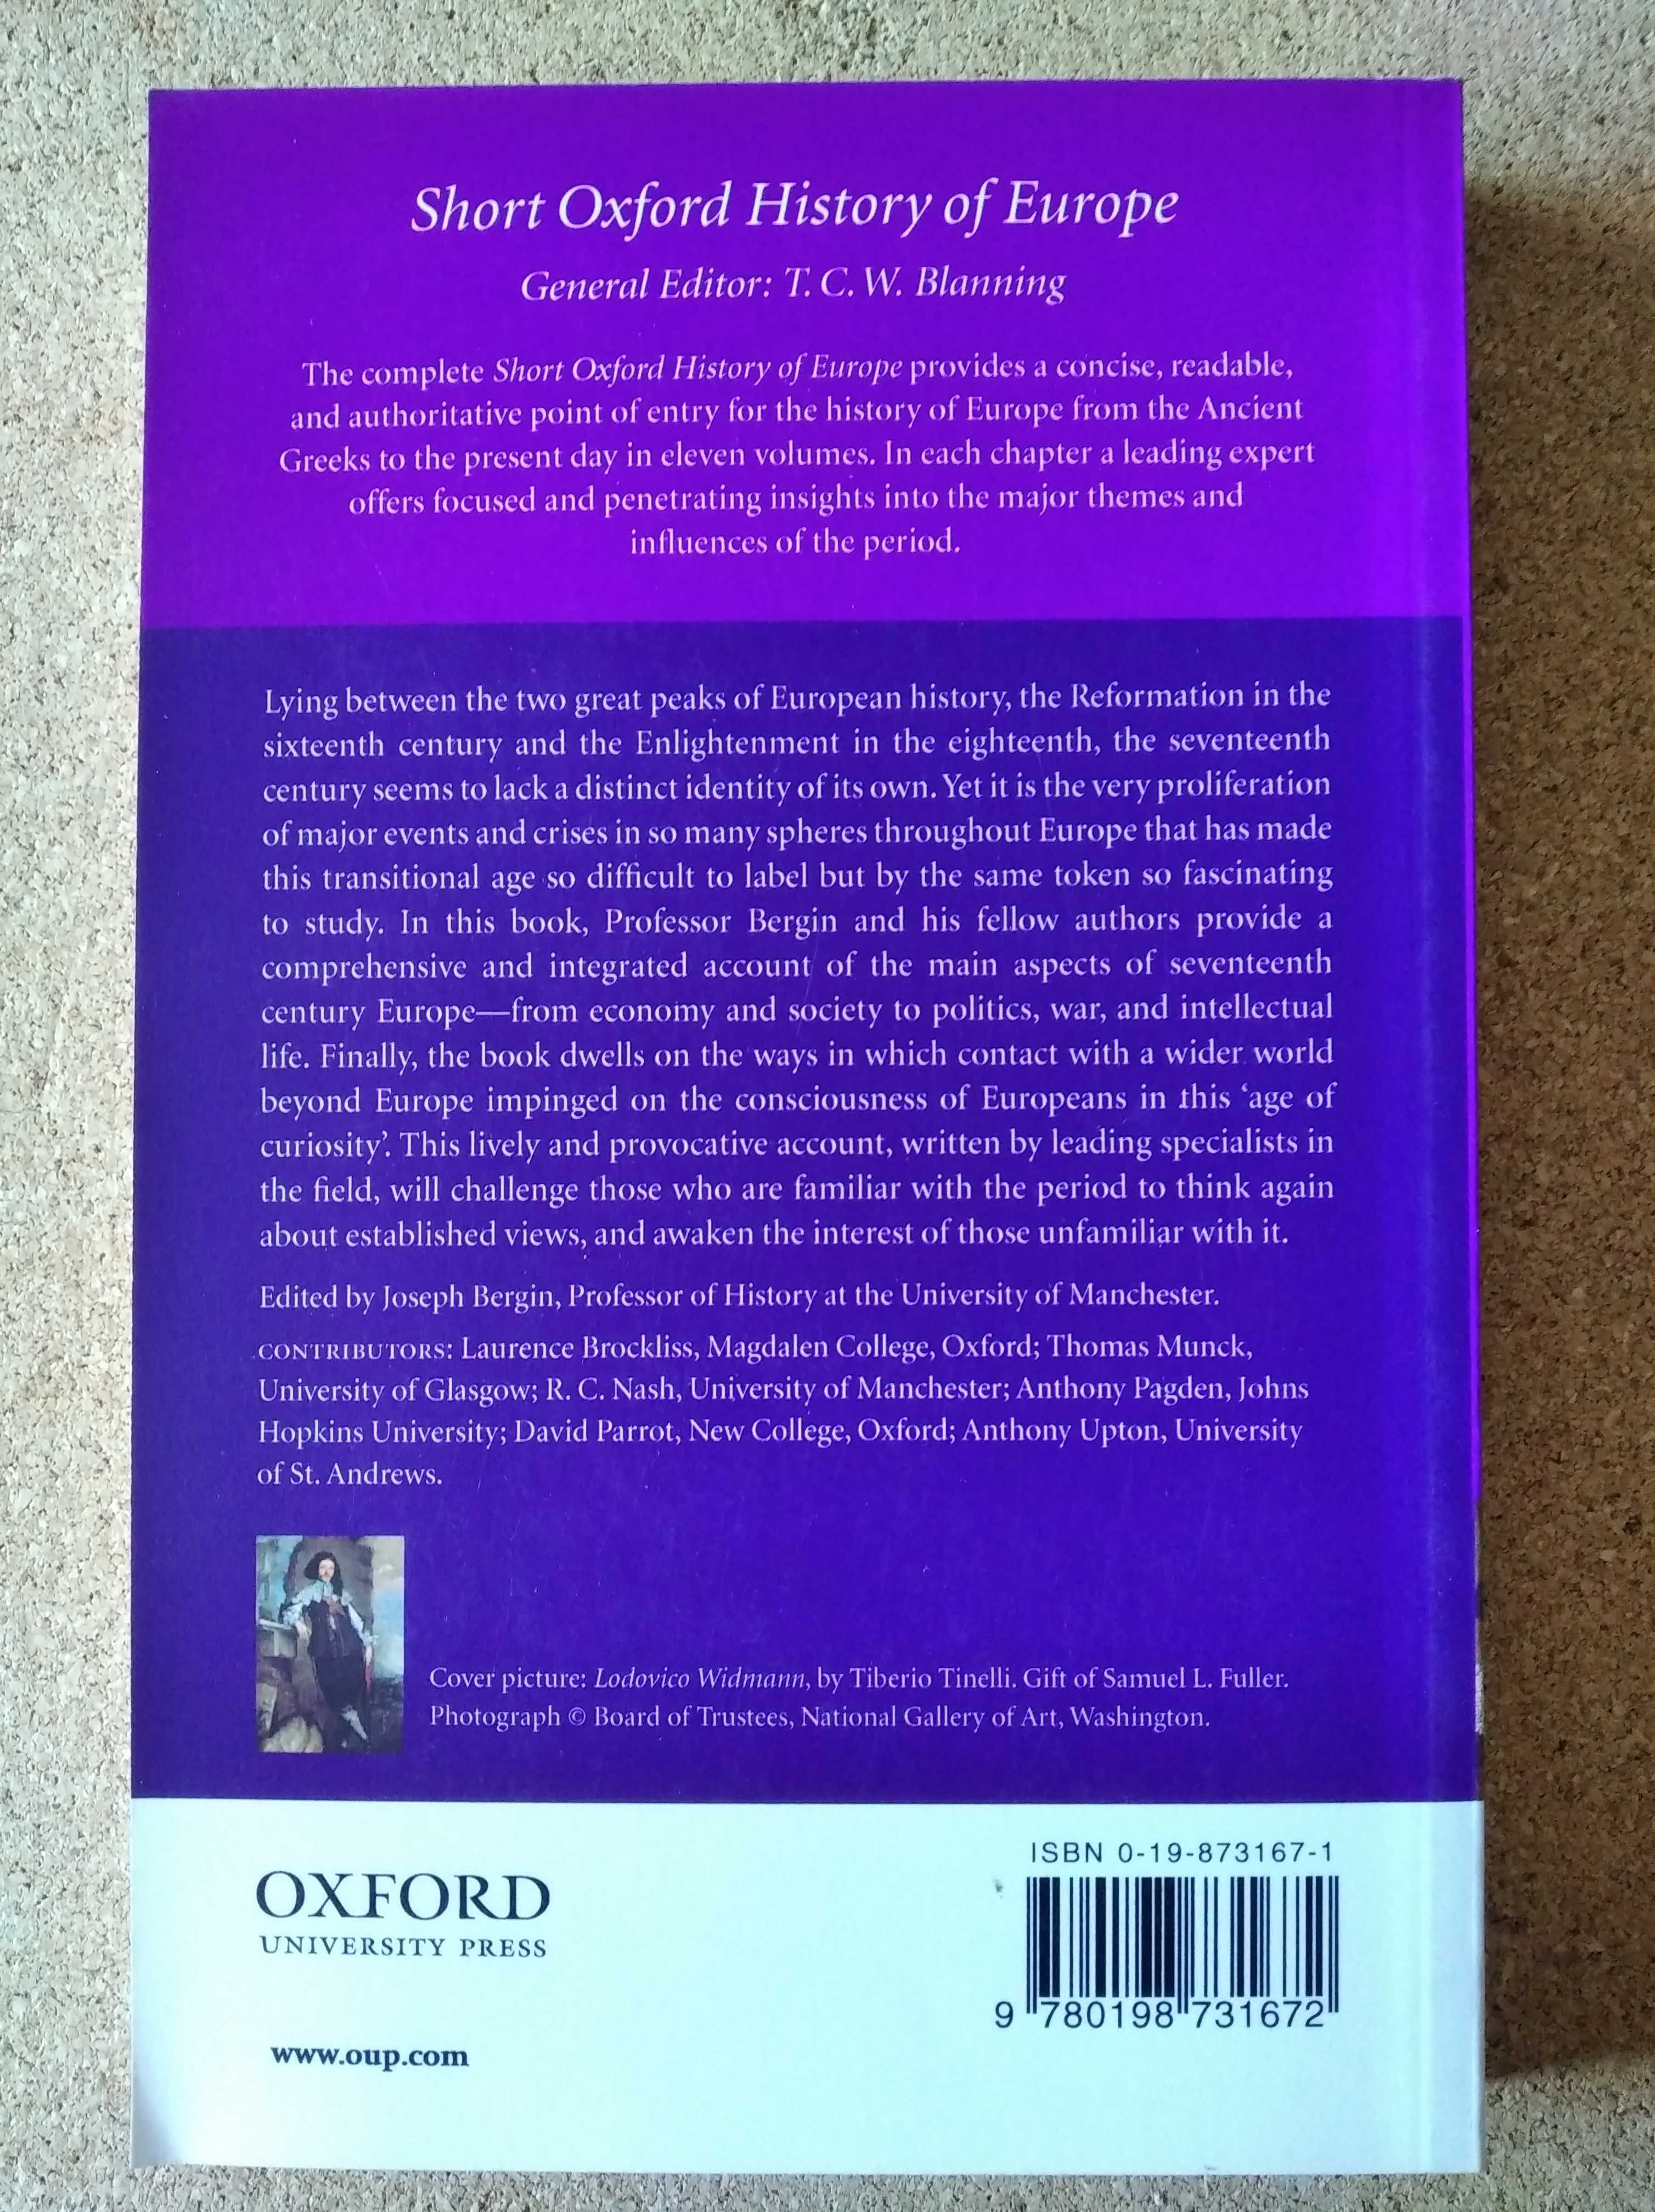 Livro de História da Europa (s. XVII) da Oxford